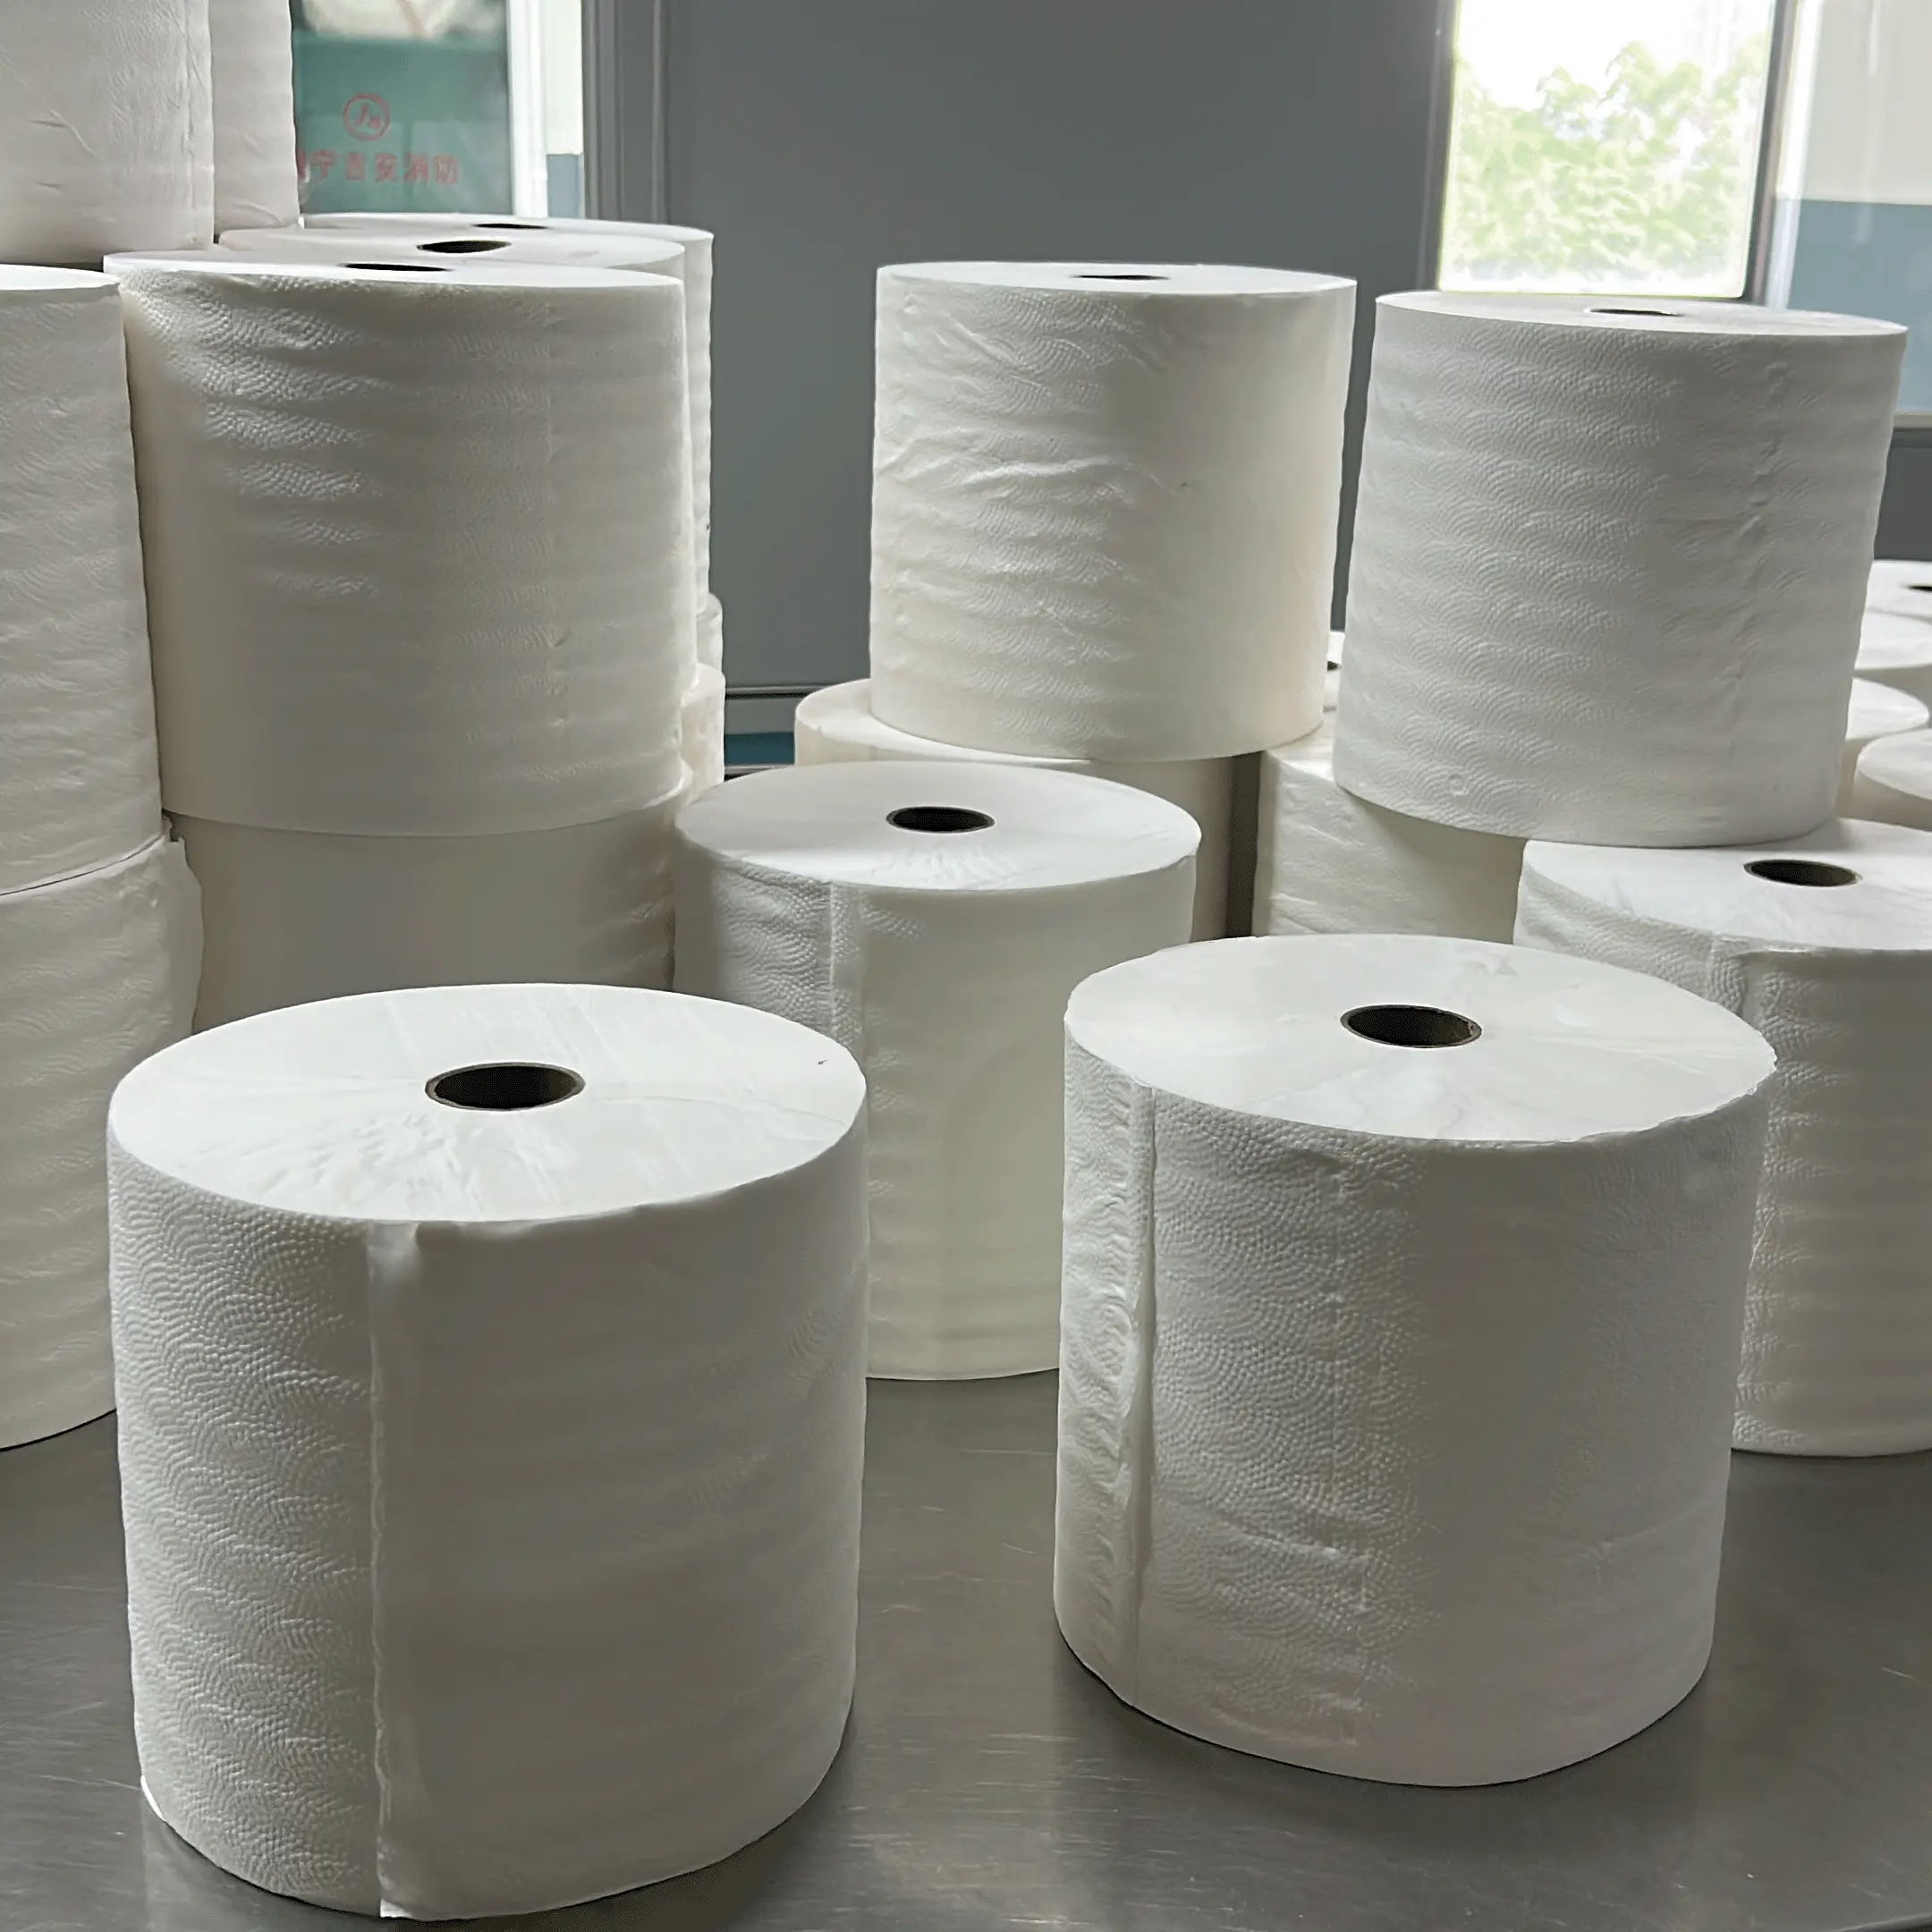 Коммерческие гигантские бумажные полотенца в рулонах под заказ тисненые 2-слойные туалетные салфетки из бамбуковой целлюлозы бумажные полотенца для рук Большие Рулоны Бумаги